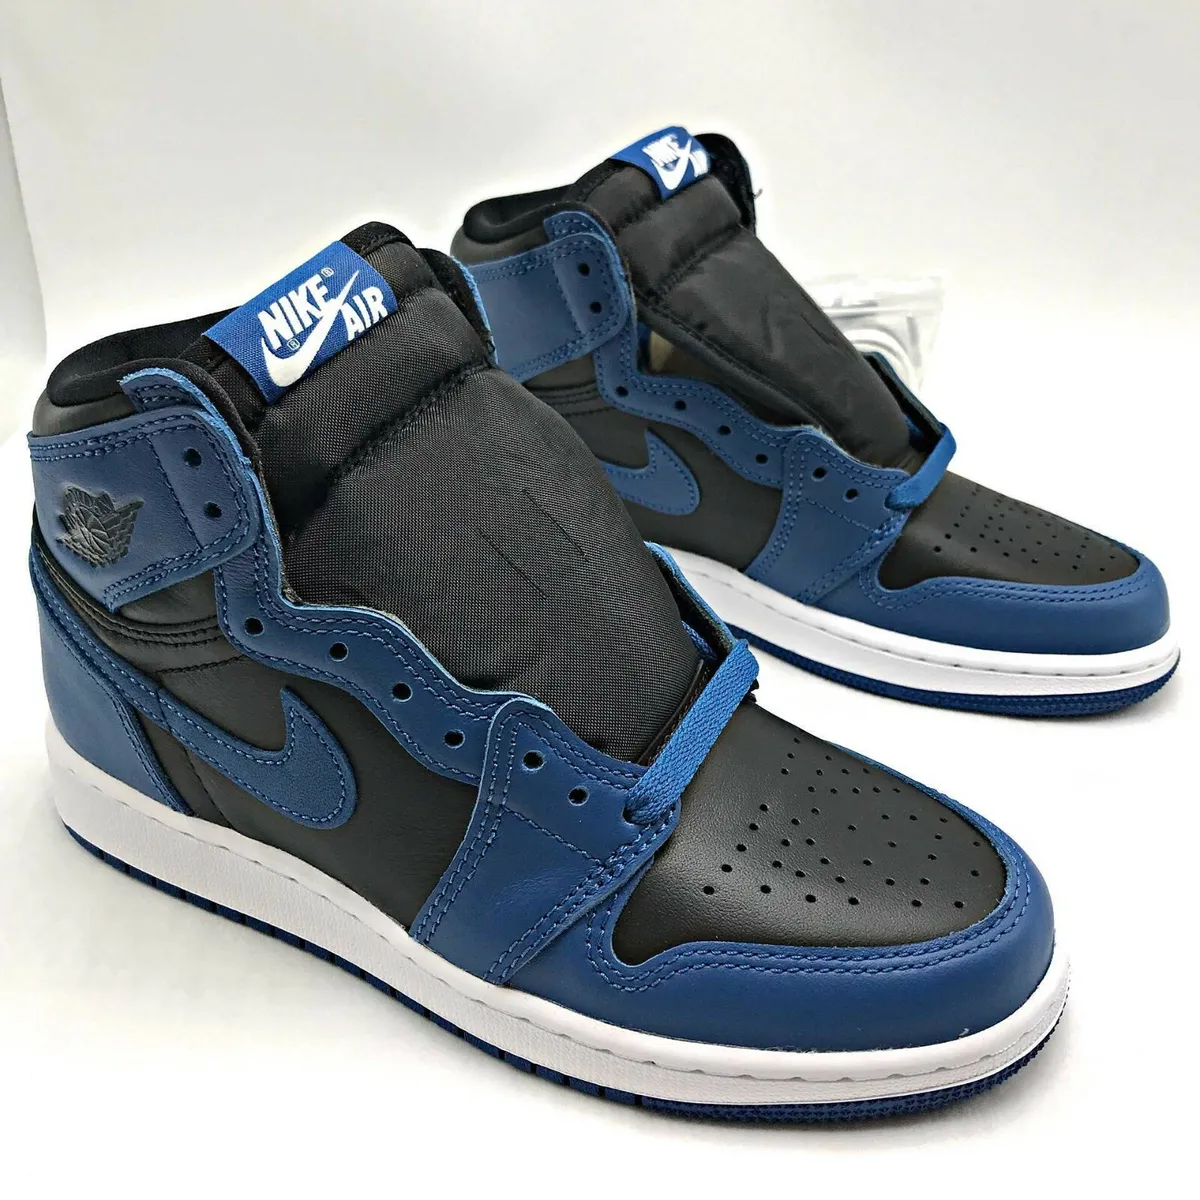 Nike Air Jordan 1 Retro High OG Dark Marina Blue (GS) Youth shoes 575441-404